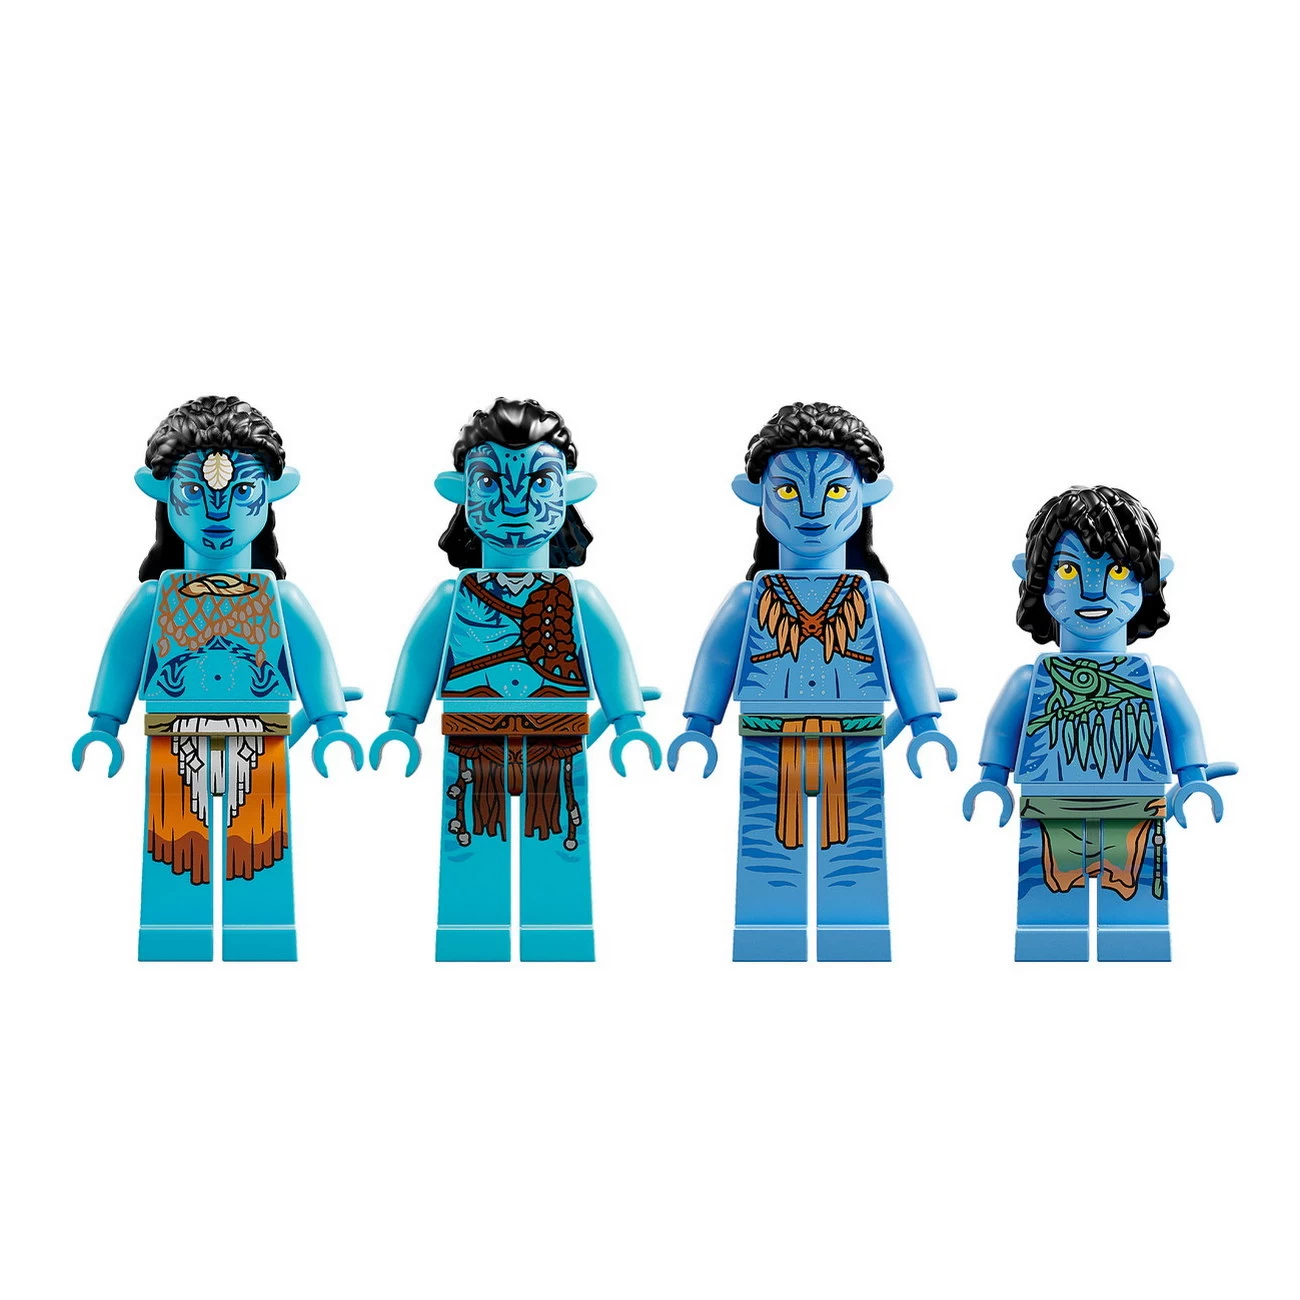 LEGO Avatar 75578 - Das Riff der Metkayina